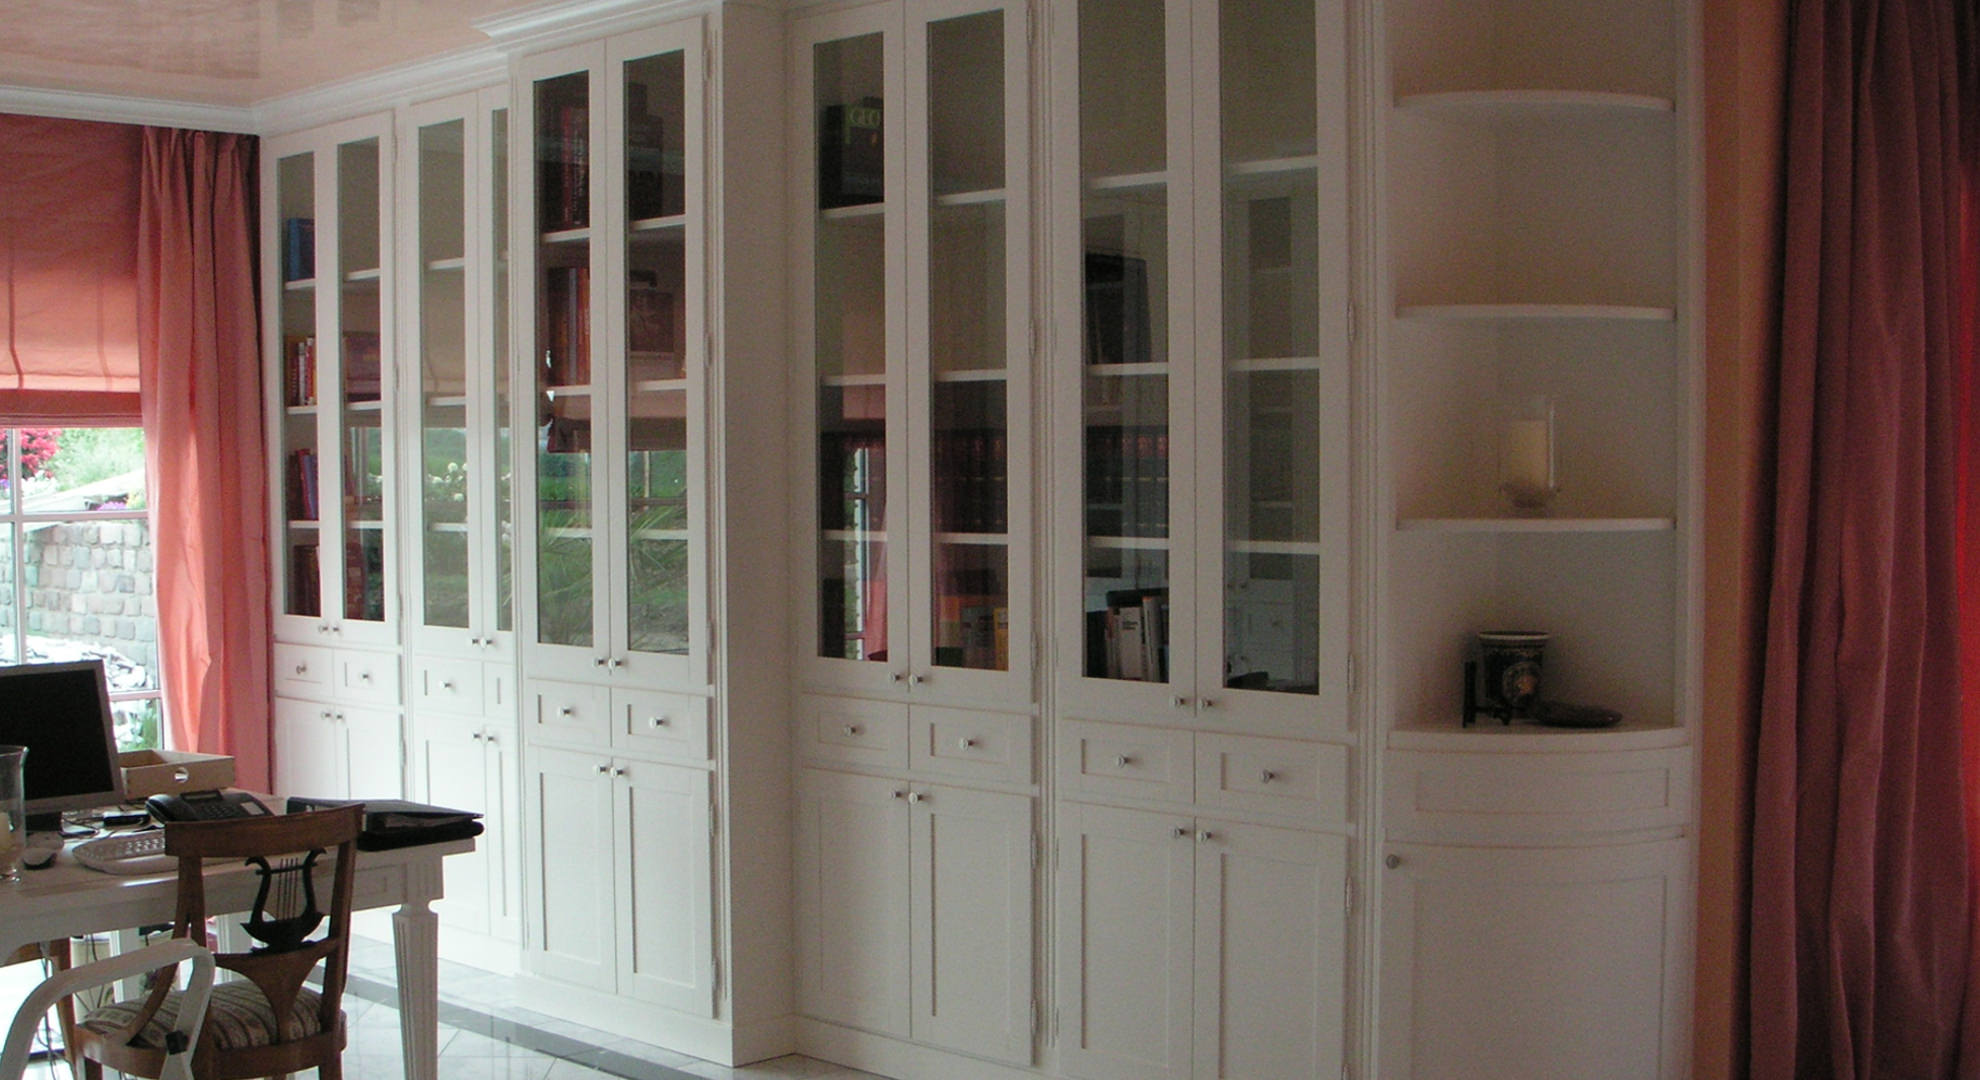 Inneneinrichtung einer Bibliothek in klassischer Ausführung in weiß matt.